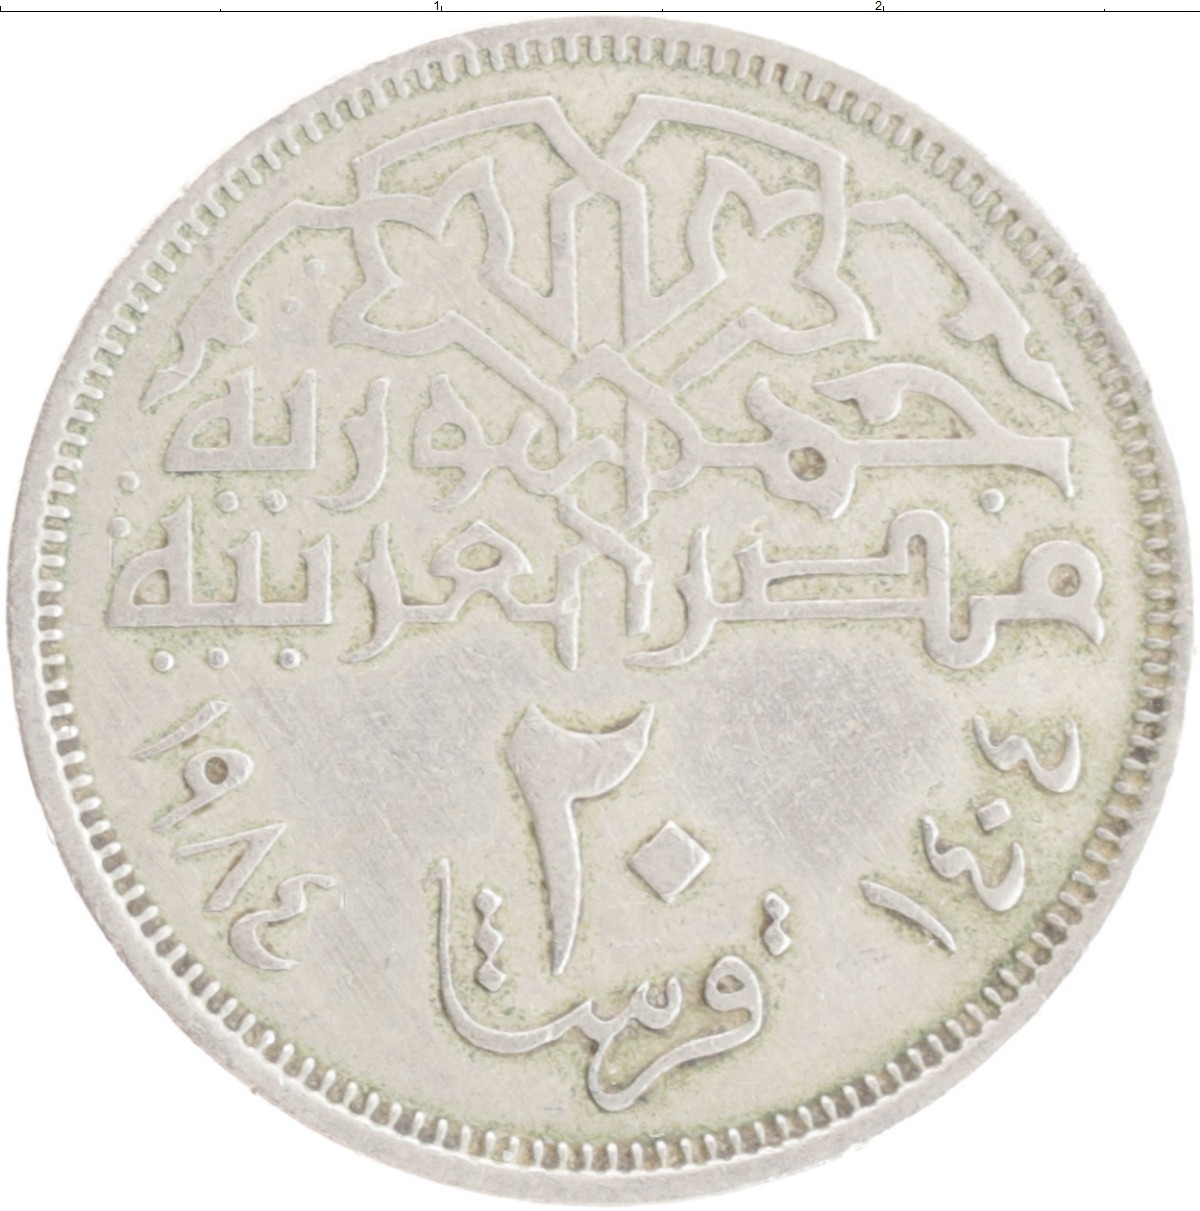 Монеты 1984 года стоимость. Бона Египта 10 пиастров.